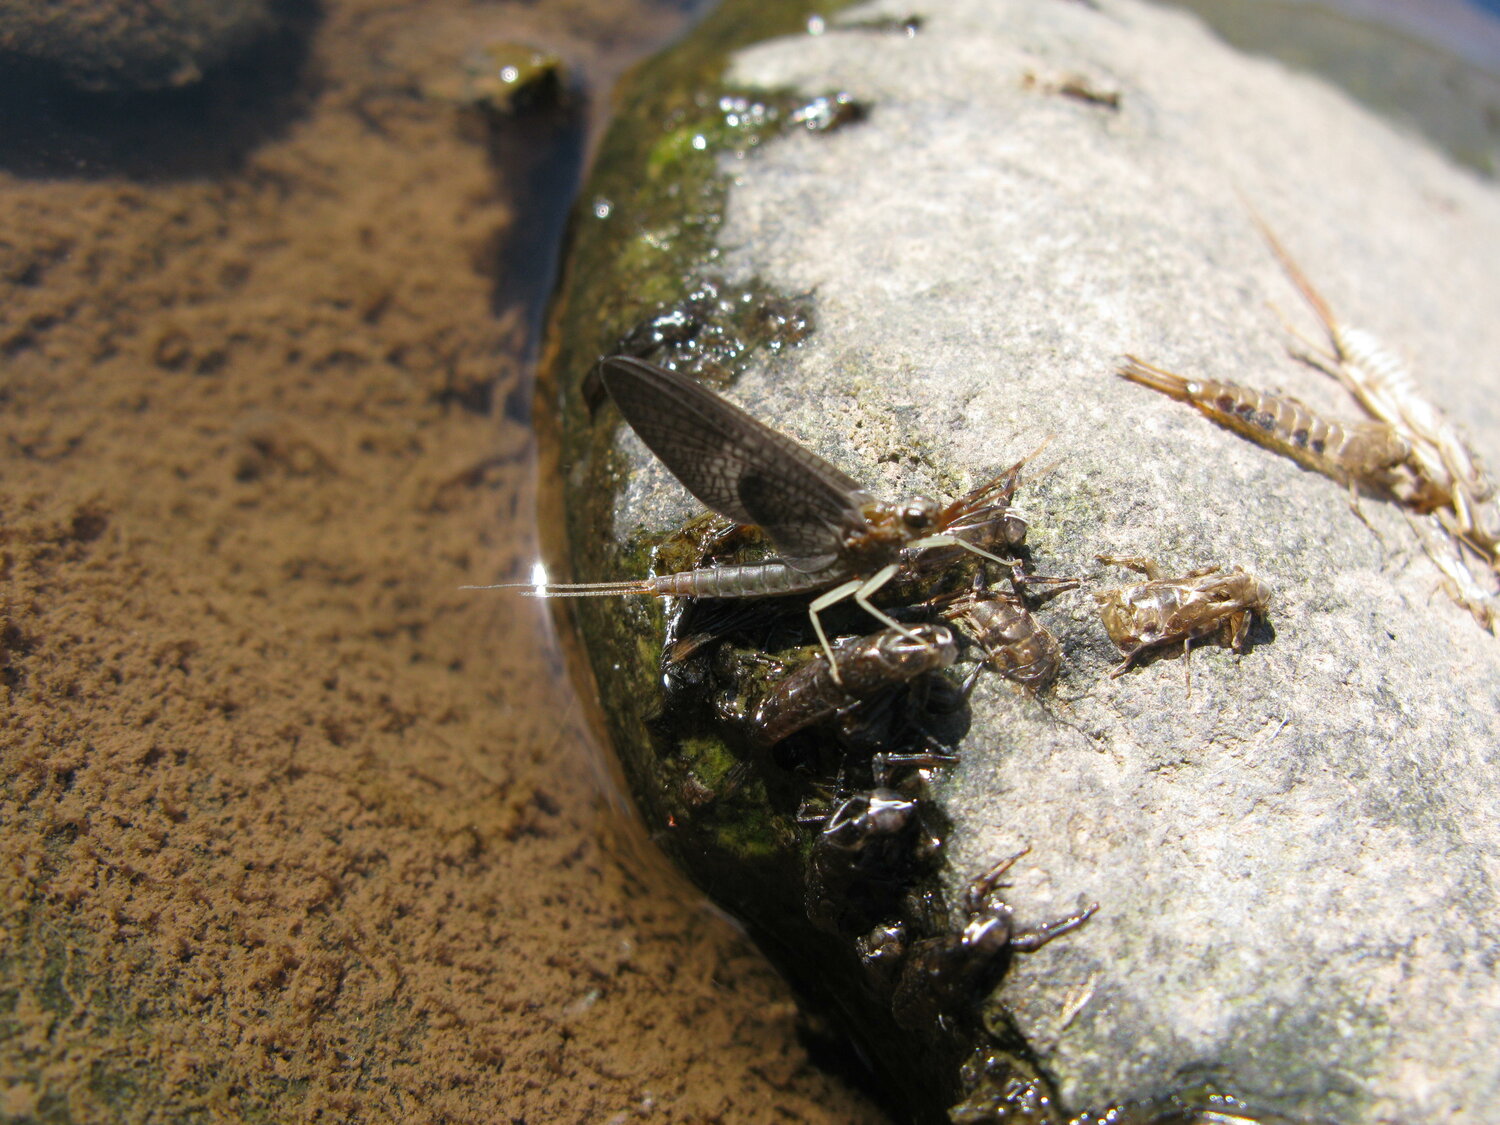 Isonychia mayflies, hatching along the Esopus Creek.